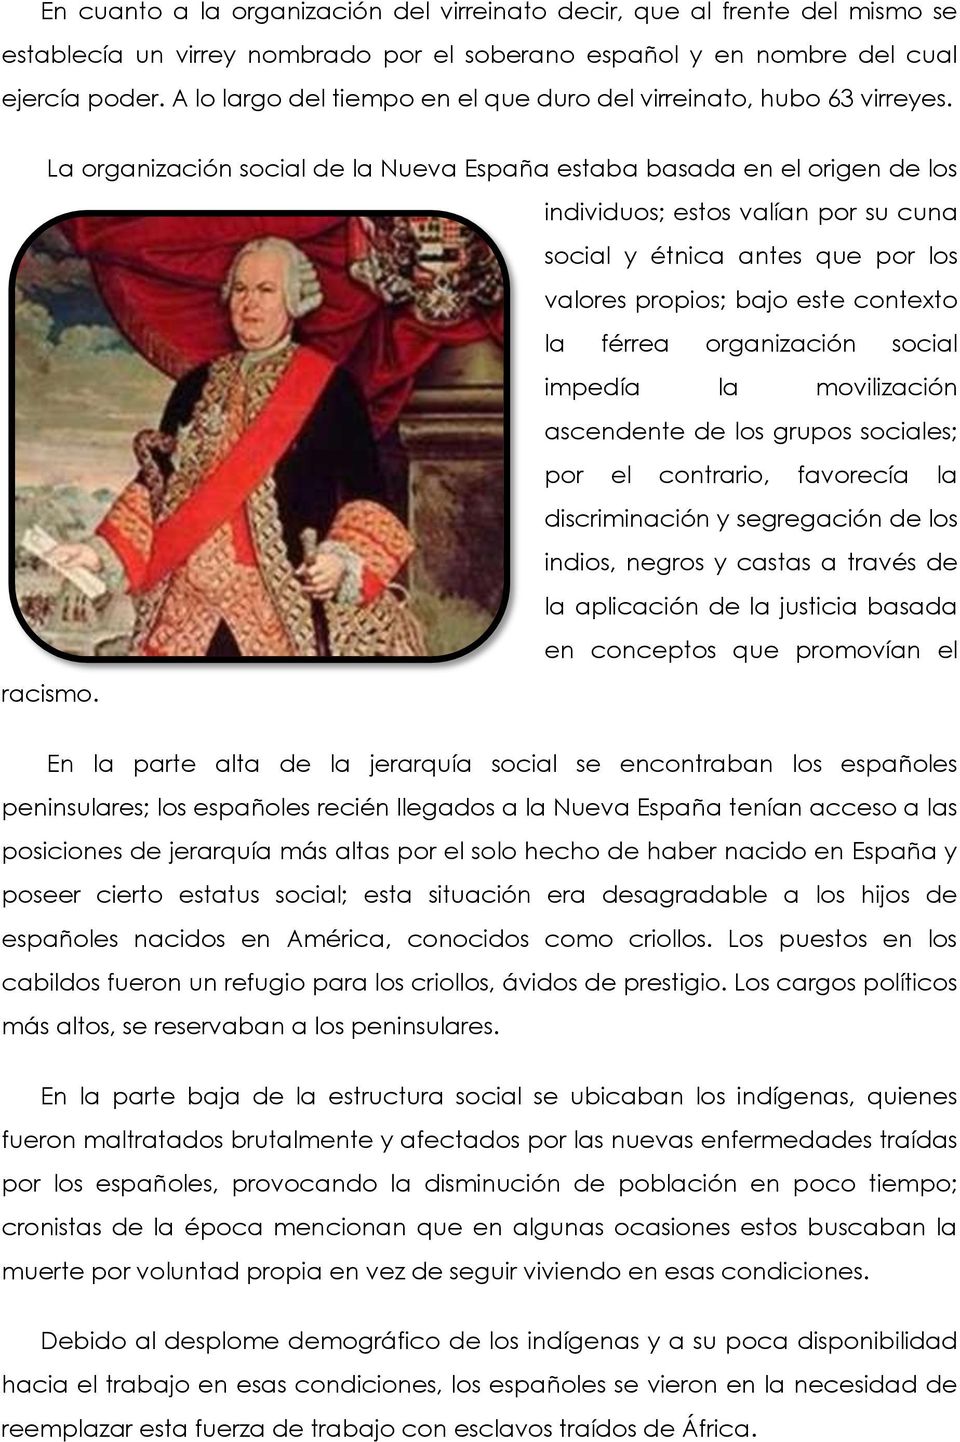 La organización social de la Nueva España estaba basada en el origen de los individuos; estos valían por su cuna social y étnica antes que por los valores propios; bajo este contexto la férrea